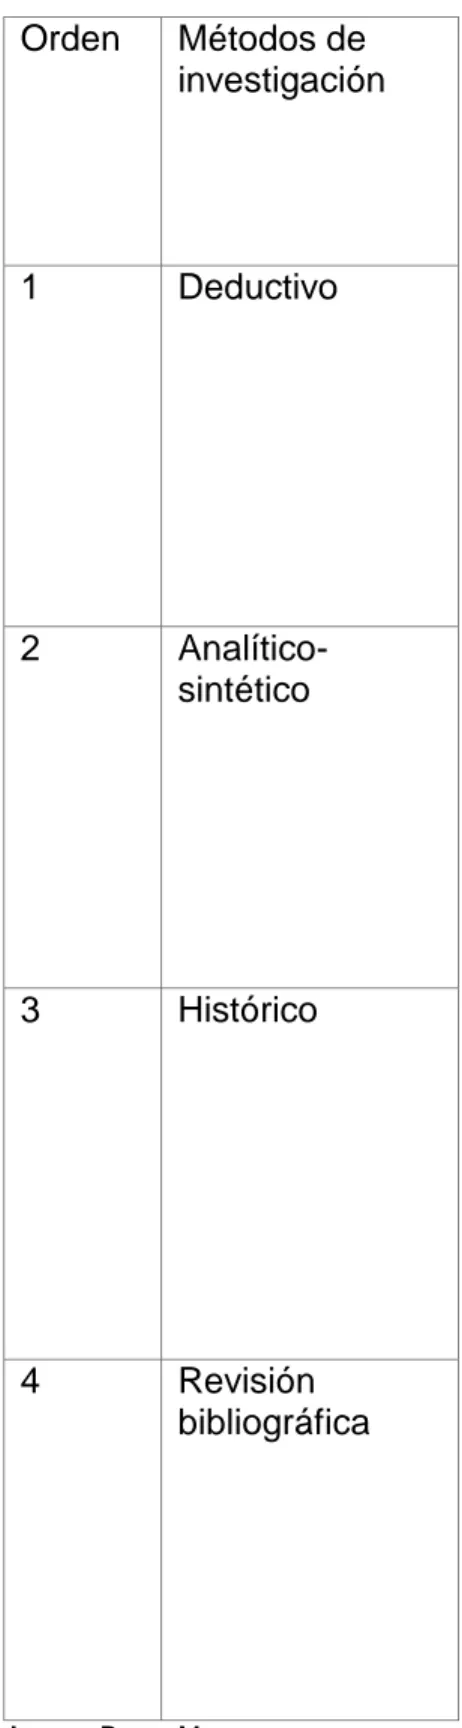 Tabla 2  Orden  Métodos de  investigación  1  Deductivo     2  Analítico-  sintético  3  Histórico   4  Revisión  bibliográfica  